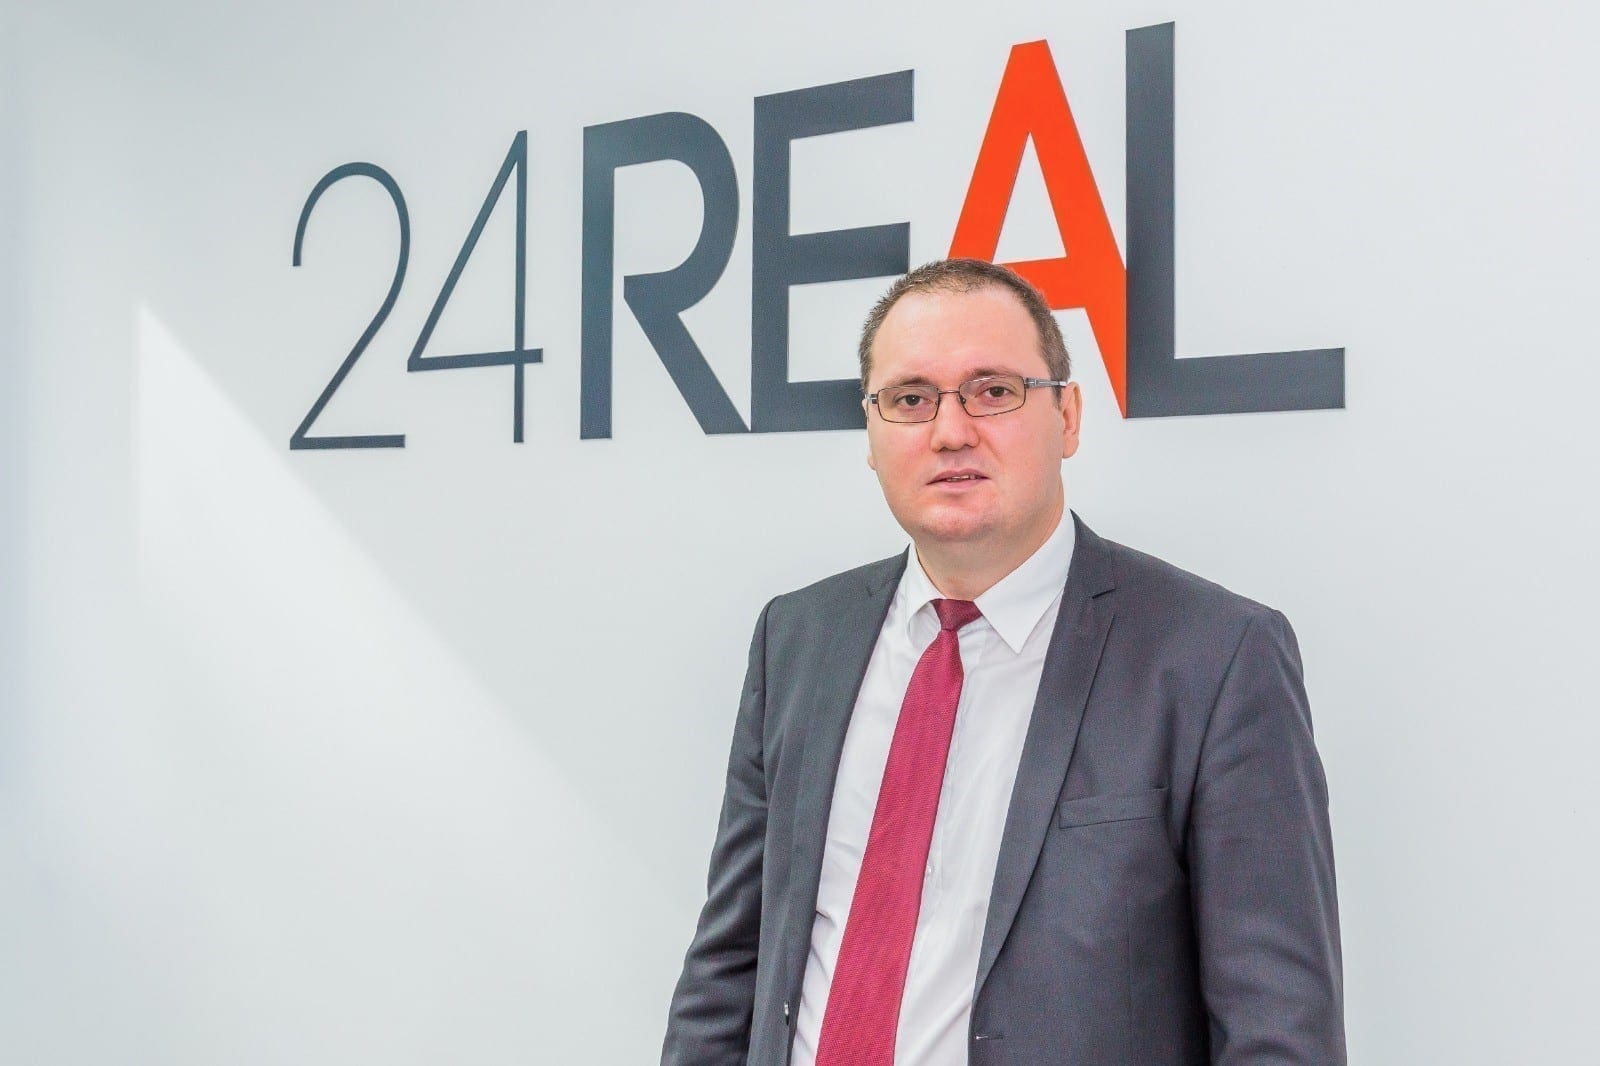 Constantin Capraru managing partner 24REAL 2020 1 - Companiile din clădirile de birouri devin jucători pe piața subînchirierilor